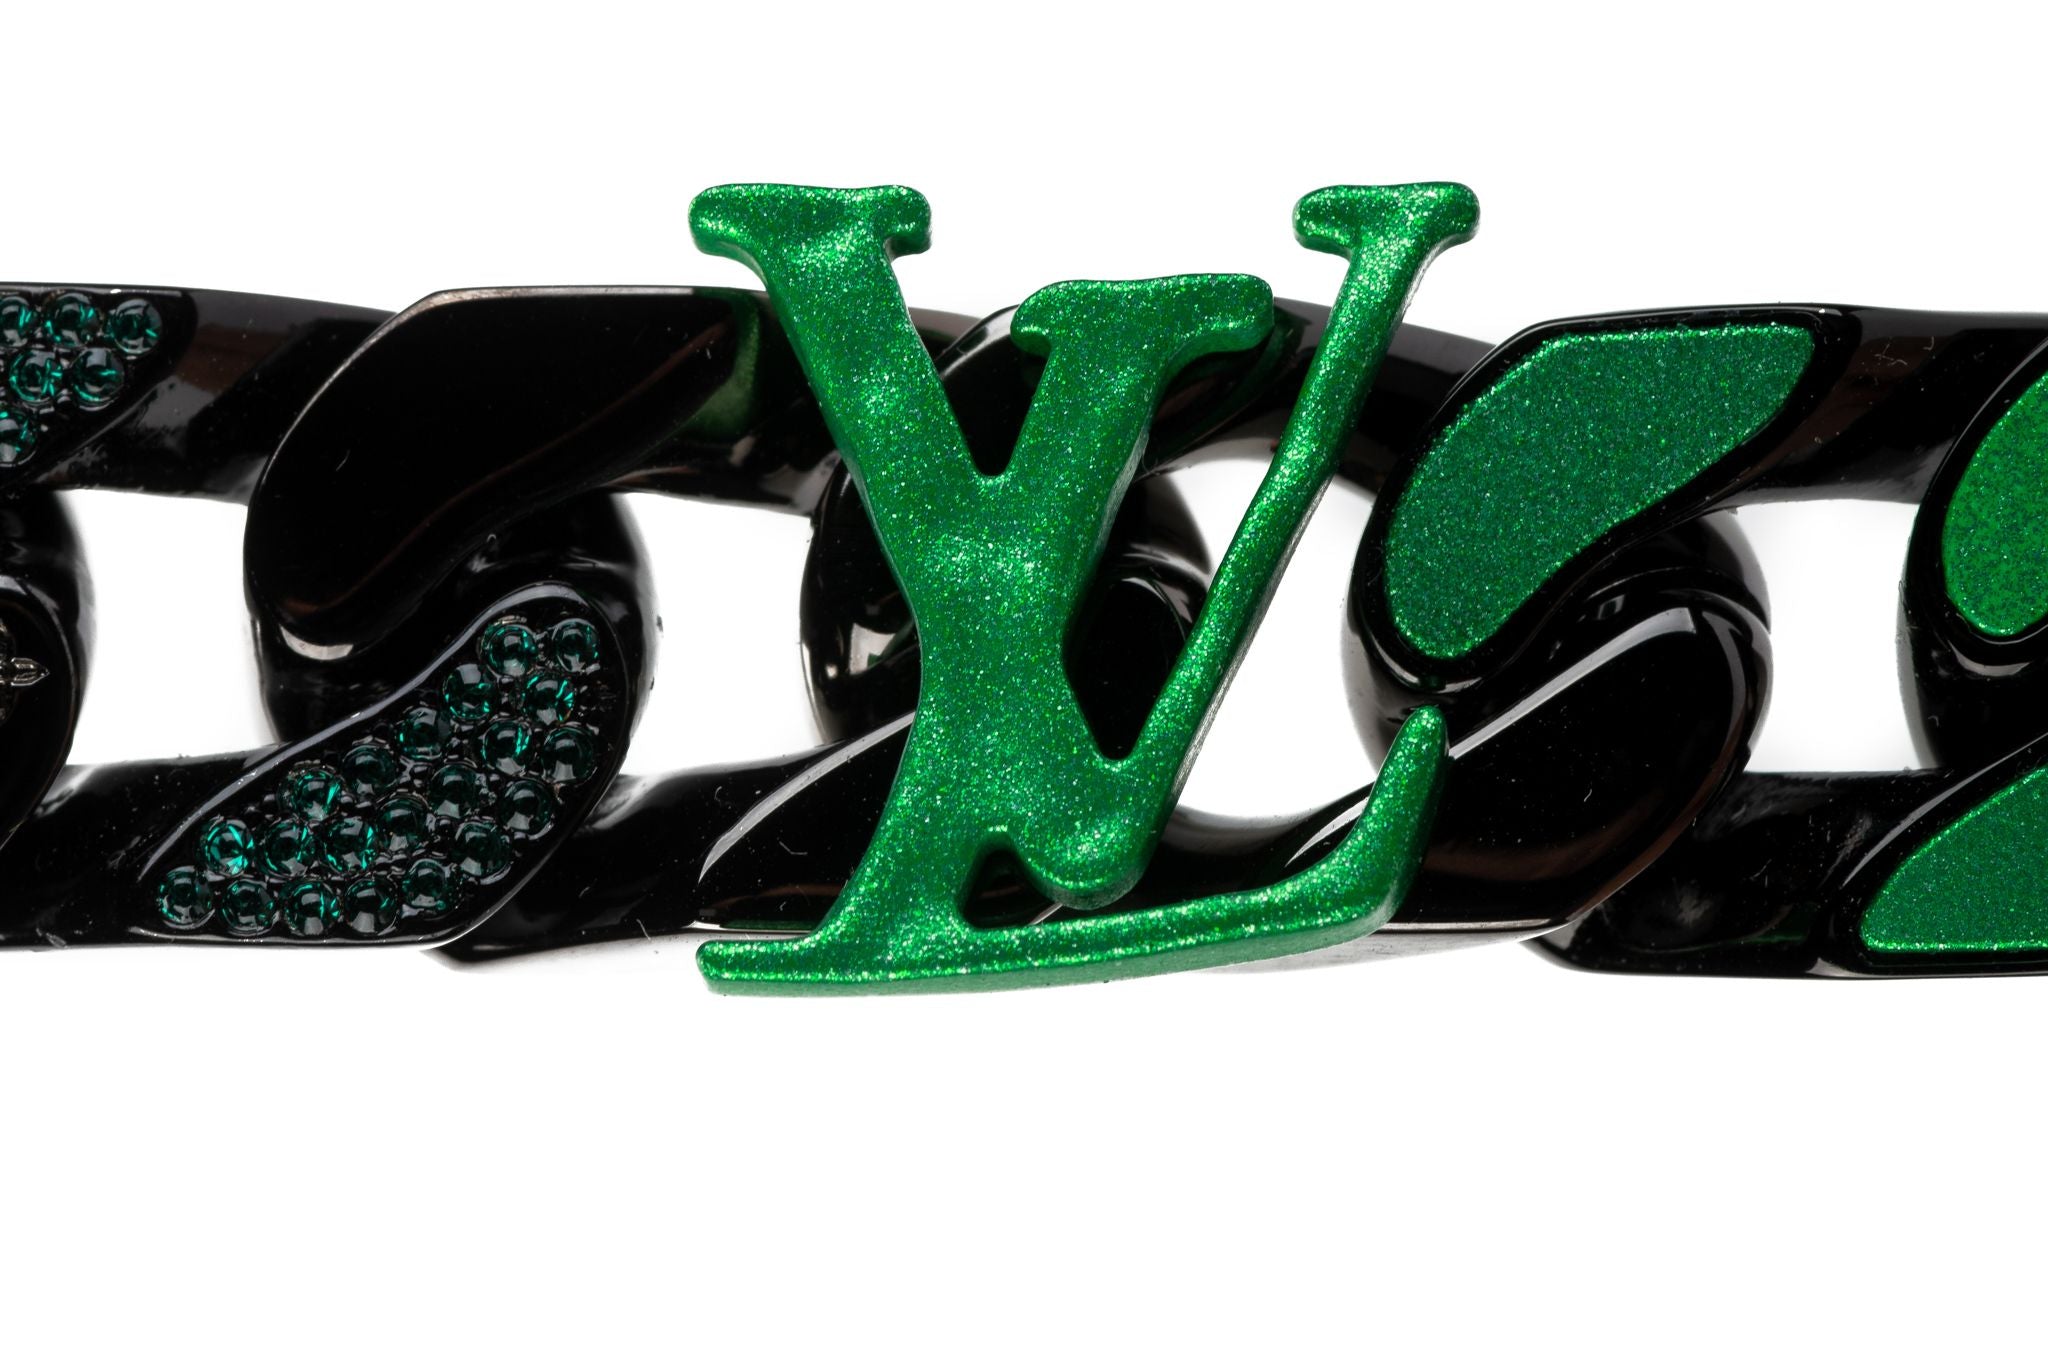 Vuitton Virgil Abloh Link Bracelet BNIB - Vintage Lux